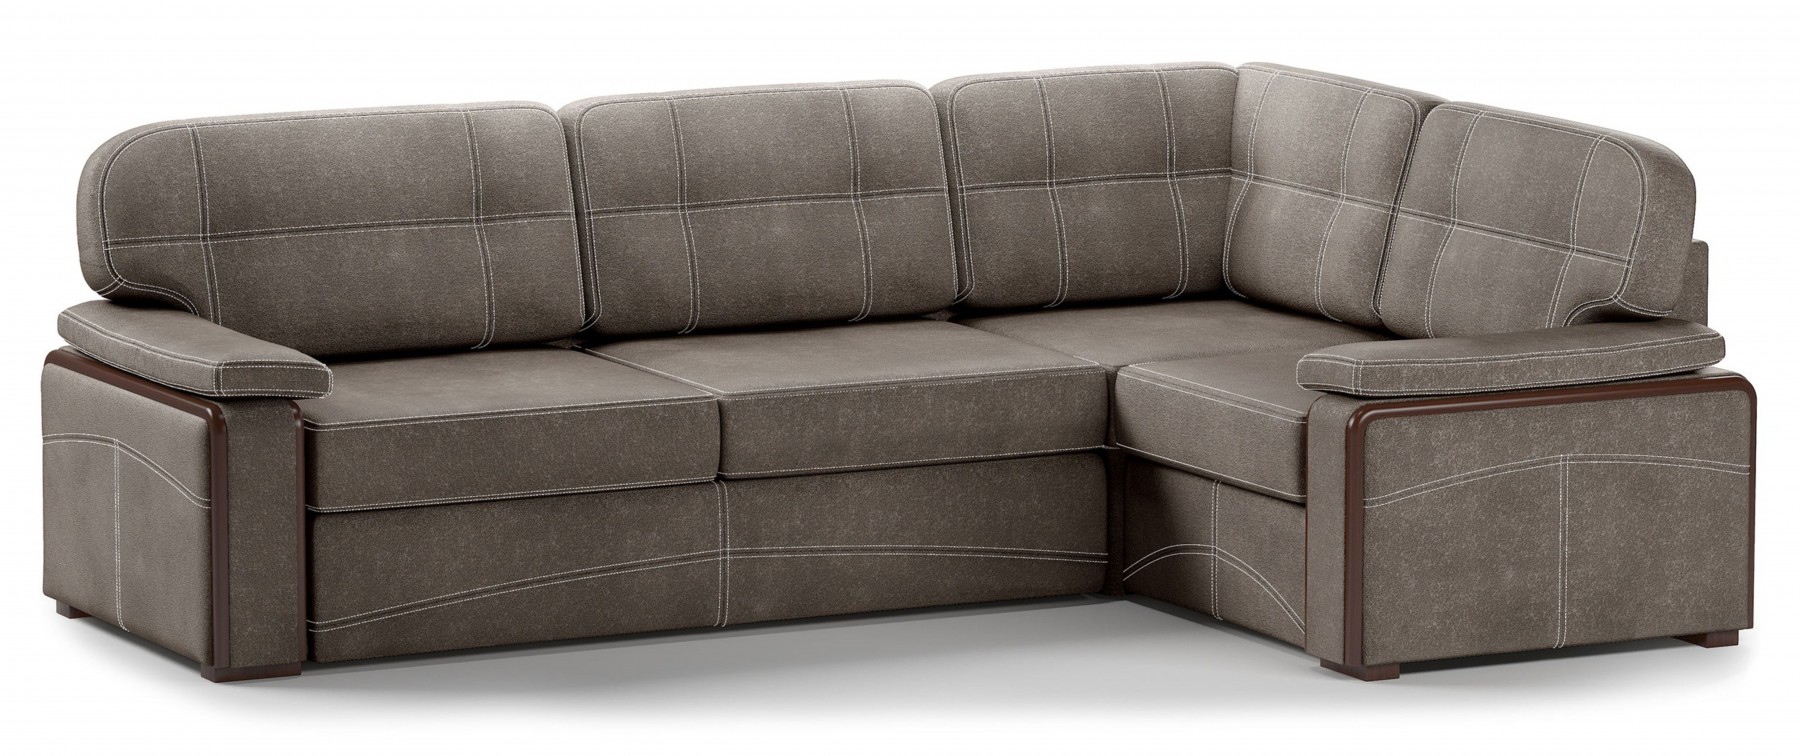 Угловой диван: где купить мебель?